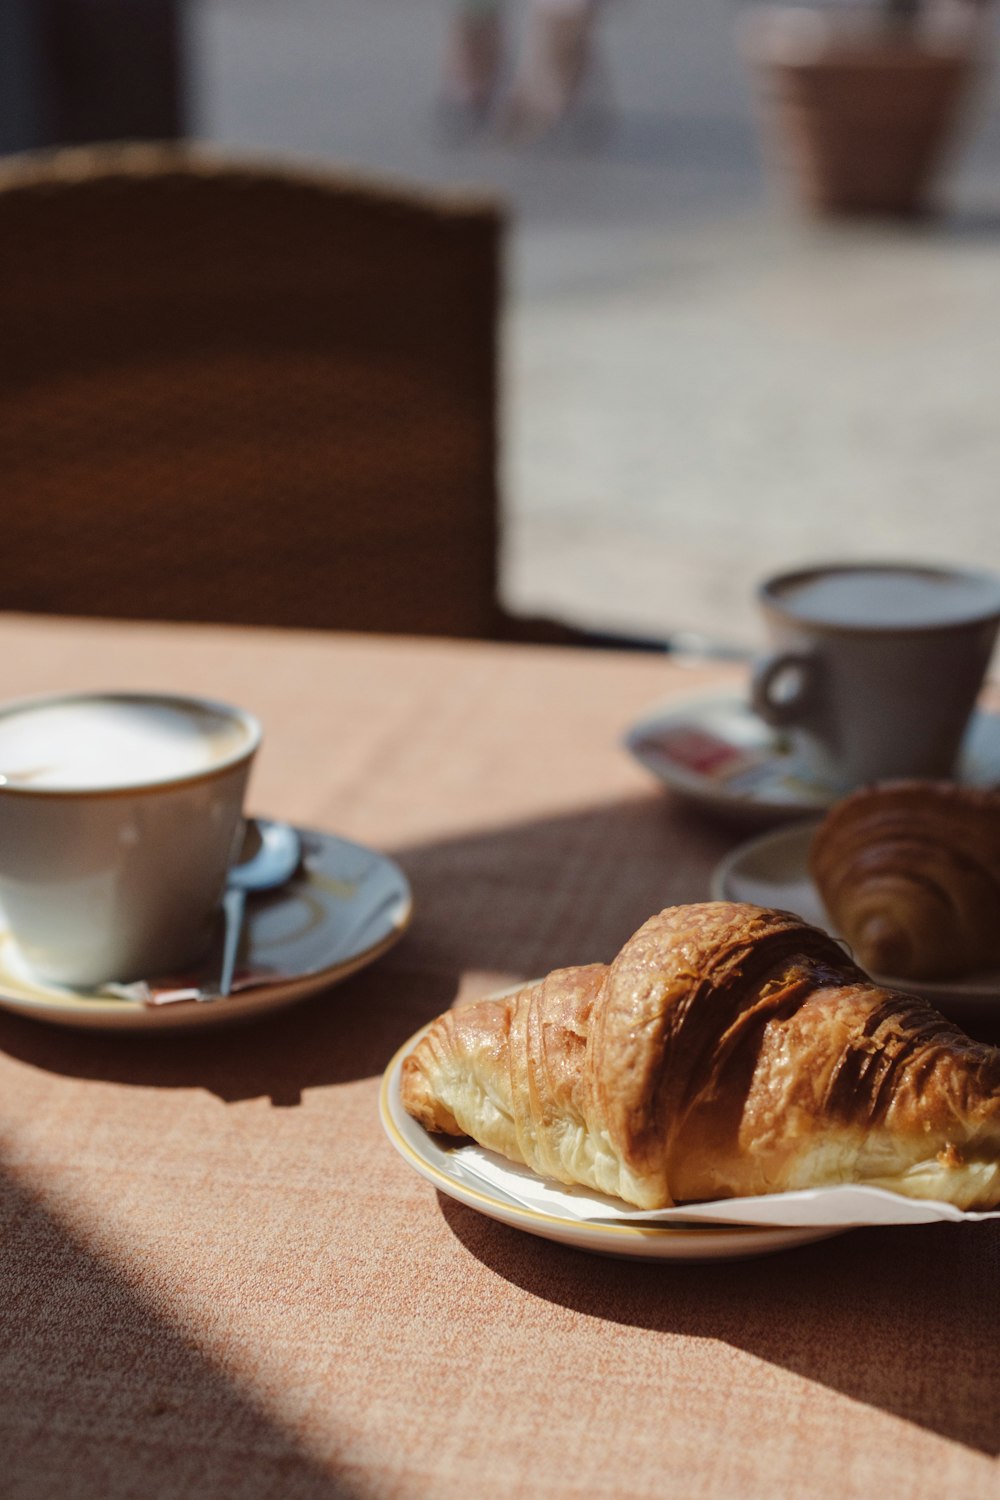 Un croissant se coloca en un plato junto a una taza de café